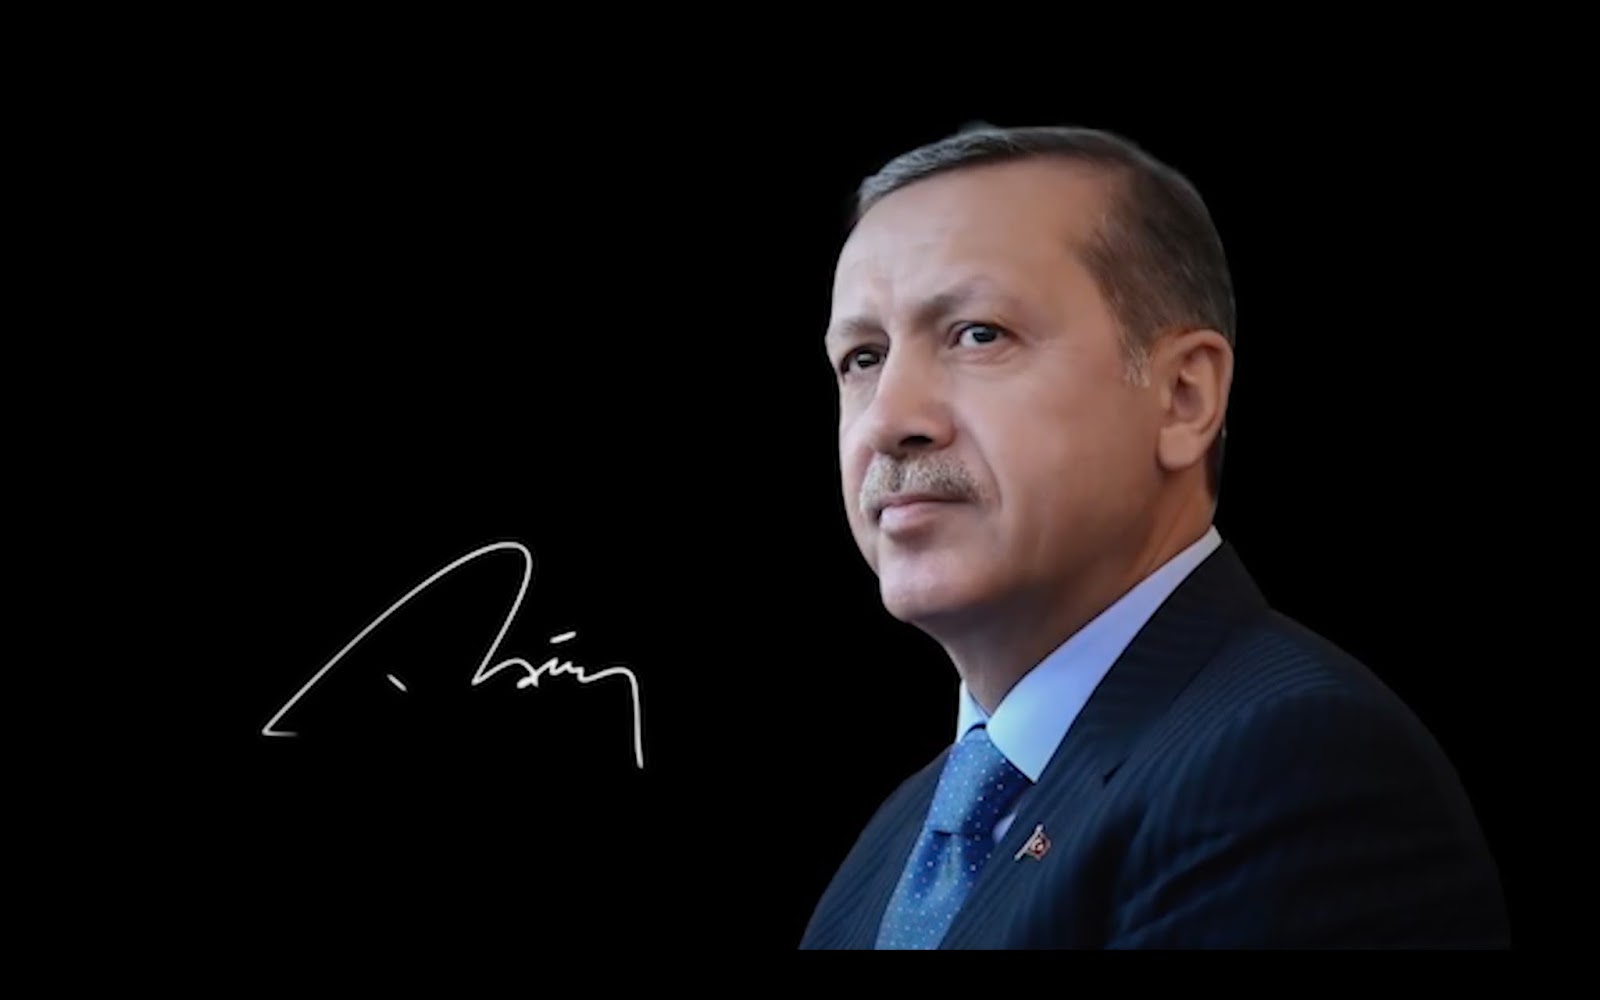 recep tayyip erdoğan hd wallpaper,cheek,chin,businessperson,white collar worker,public speaking